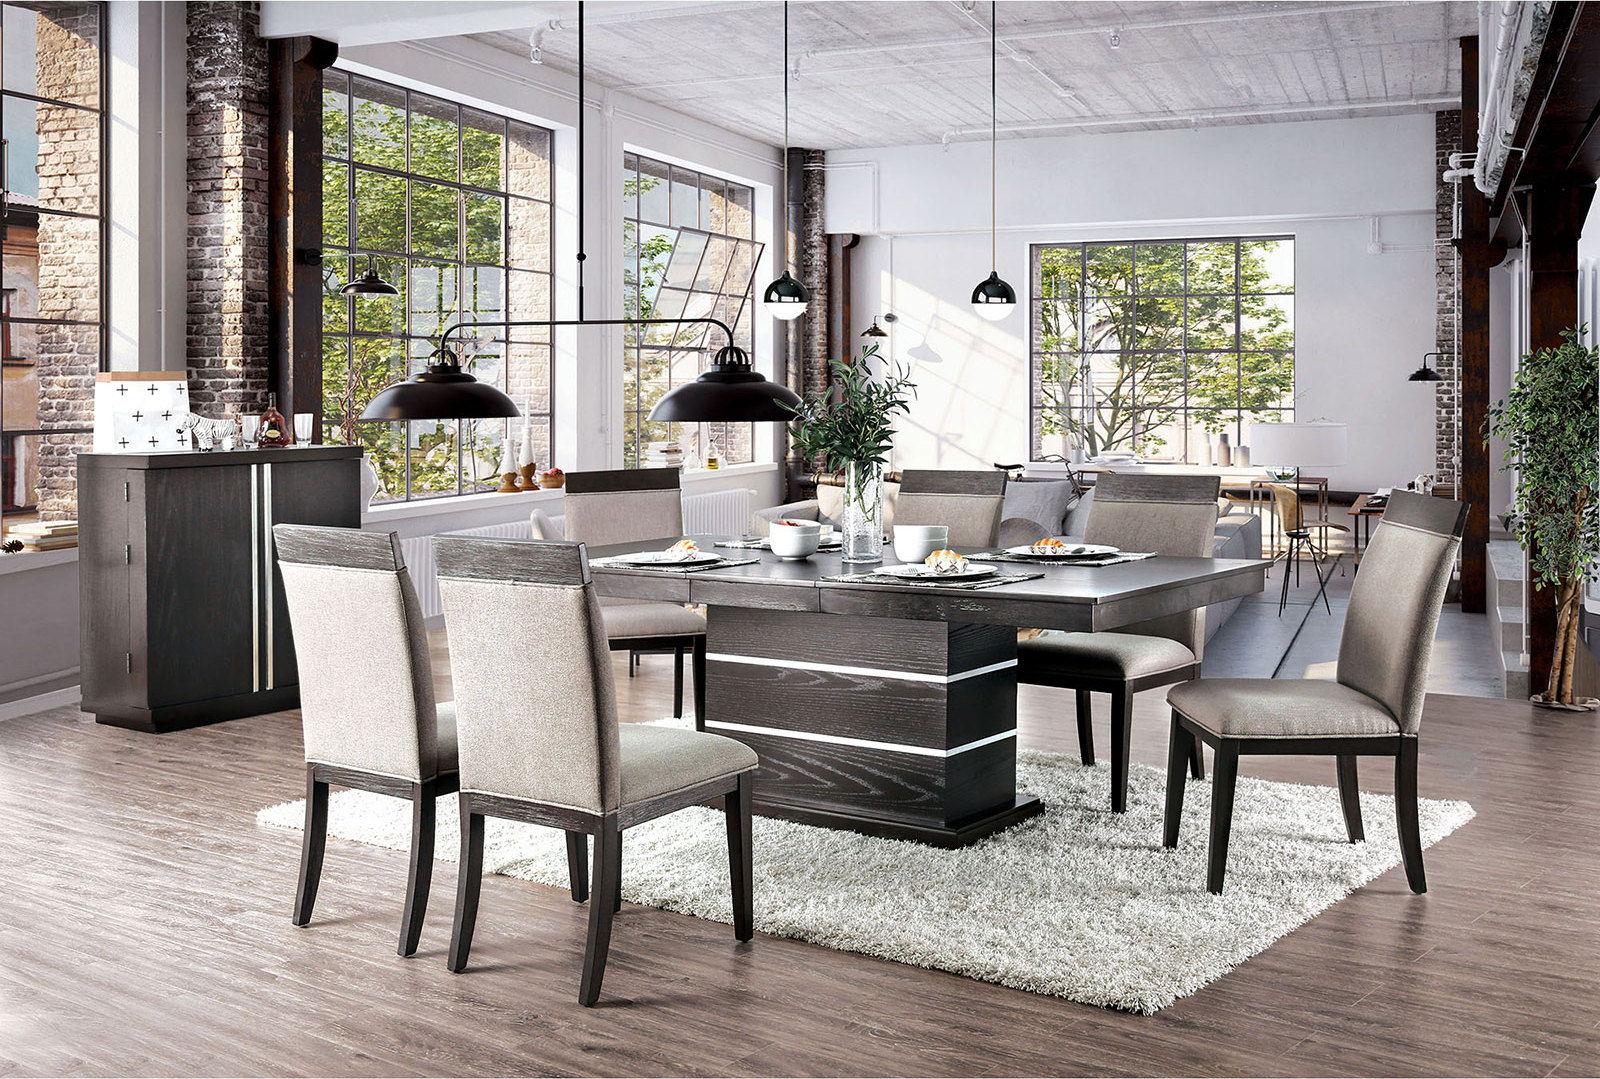 Furniture of America - Modoc - Side Chair (Set of 2) - Espresso / Beige - 5th Avenue Furniture